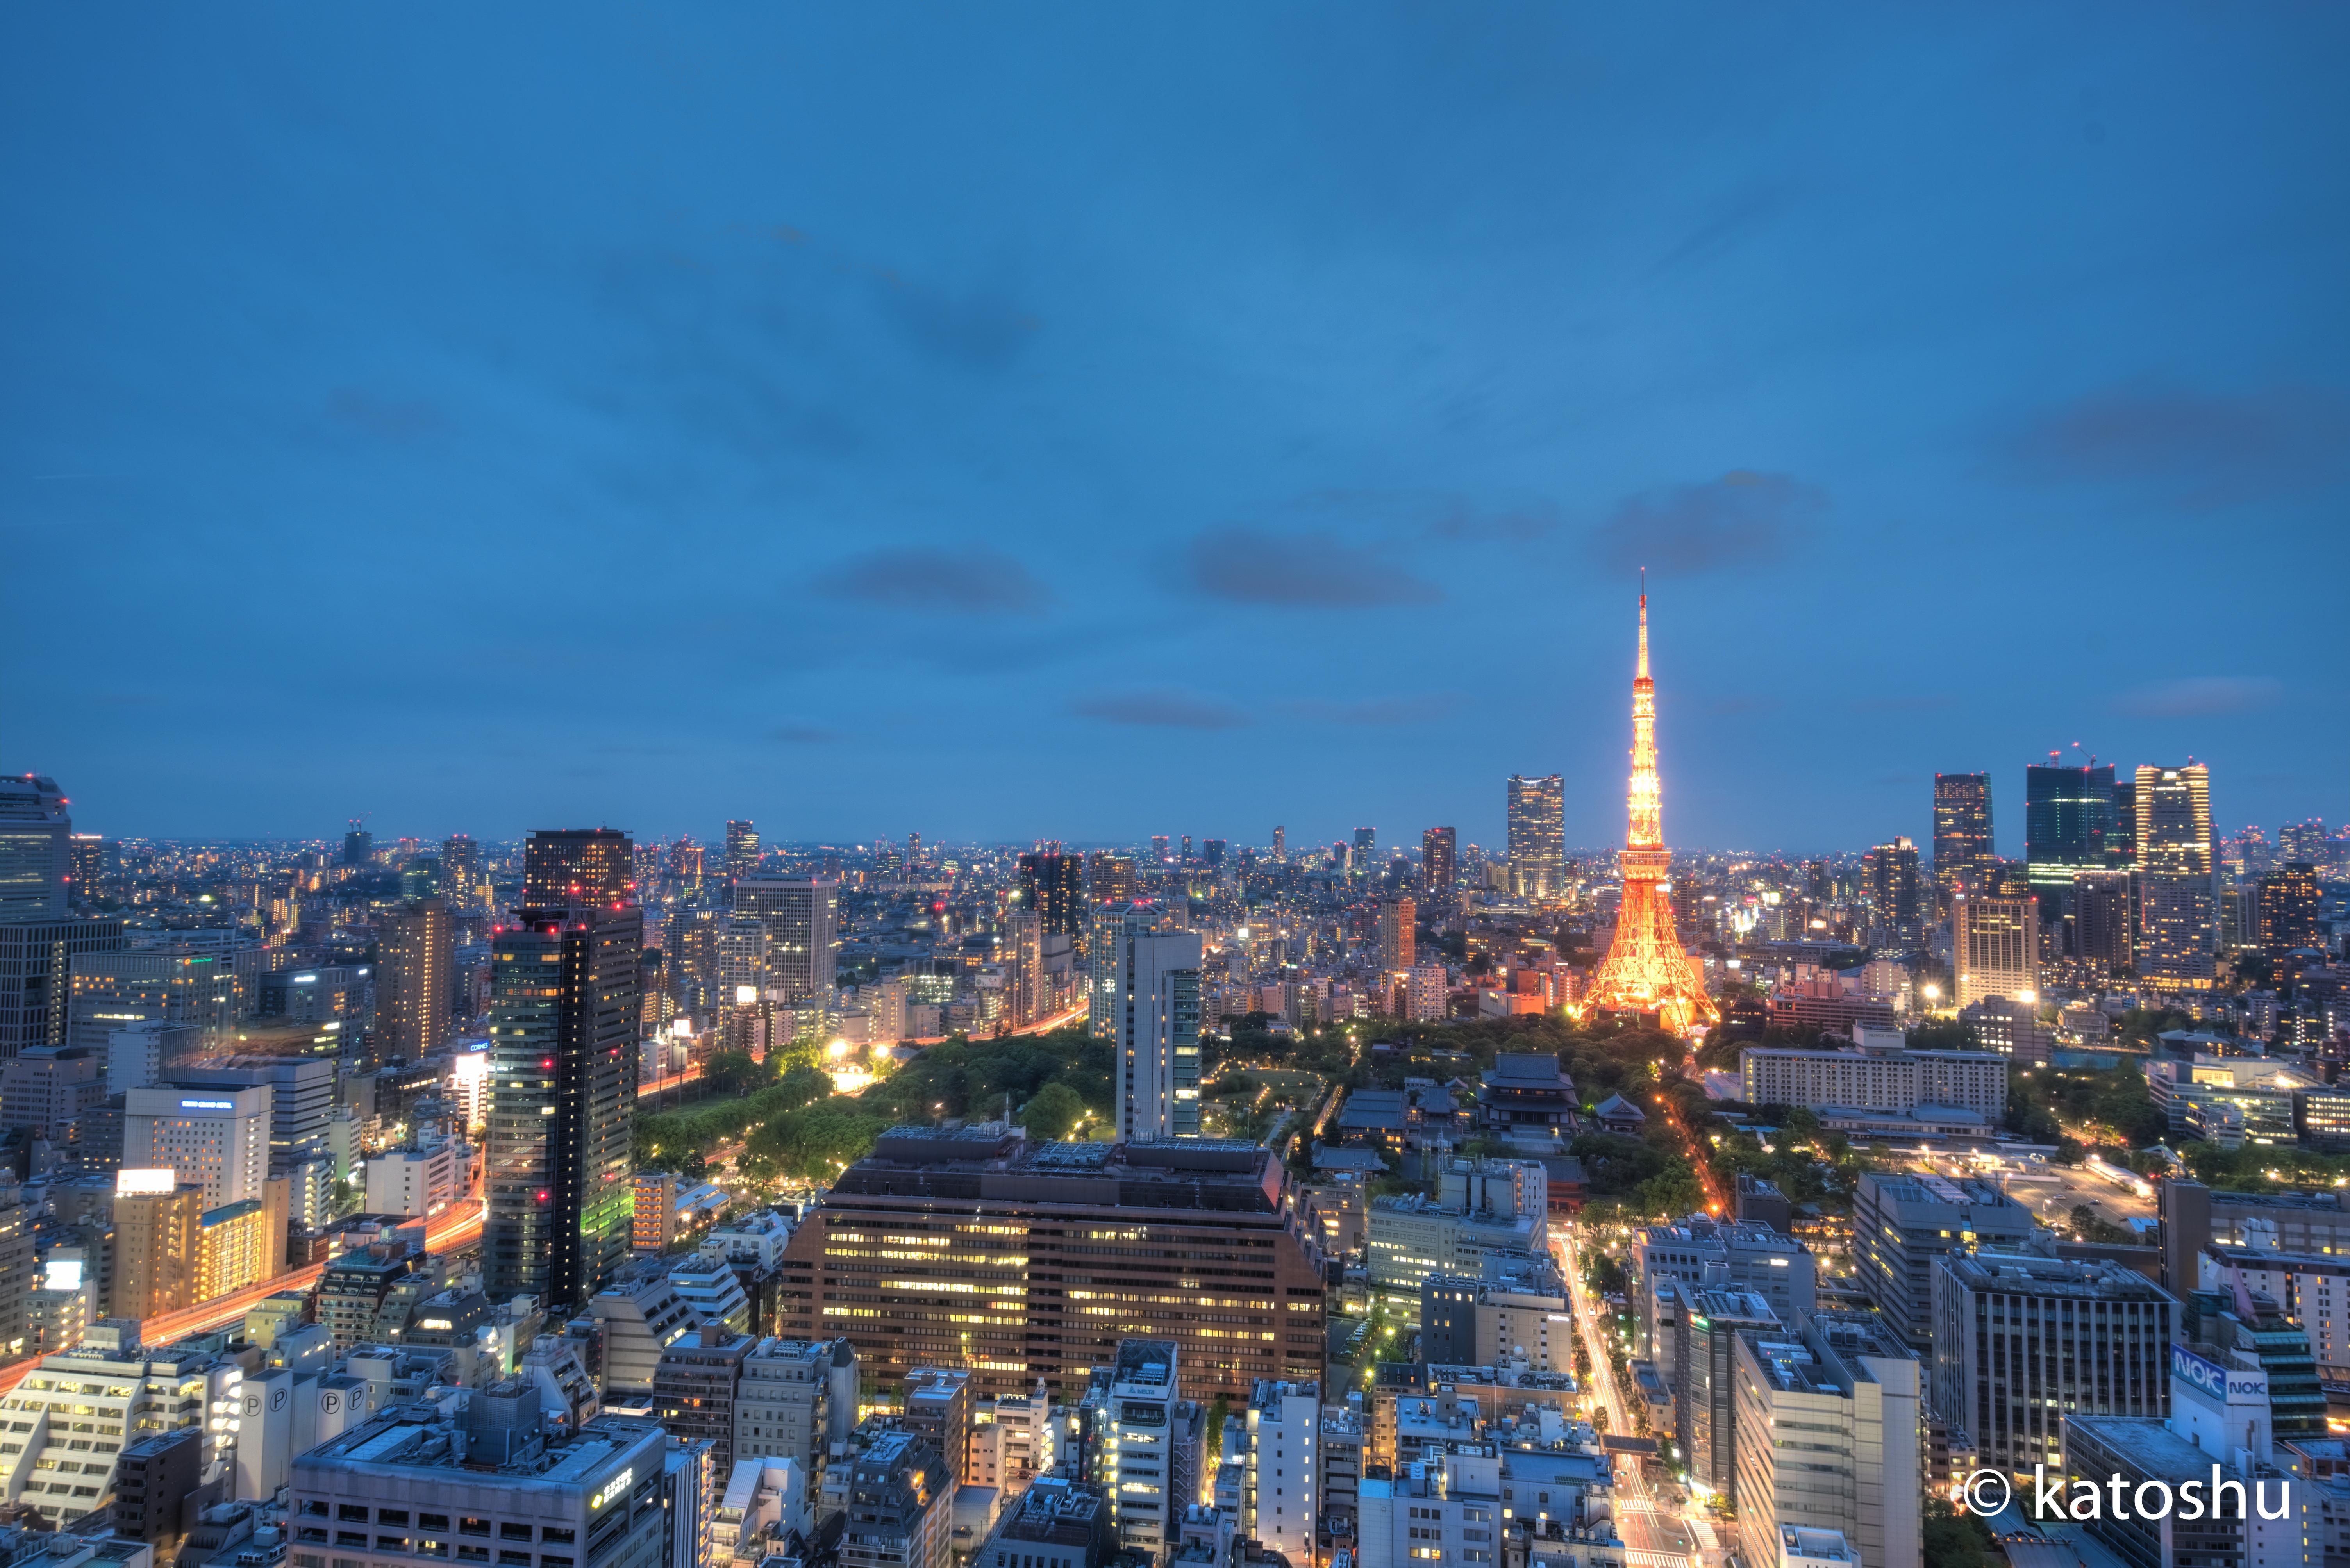 東京タワー夜景撮影は三脚可能の展望台のある貿易センタービルがおすすめ 東京monoブログ